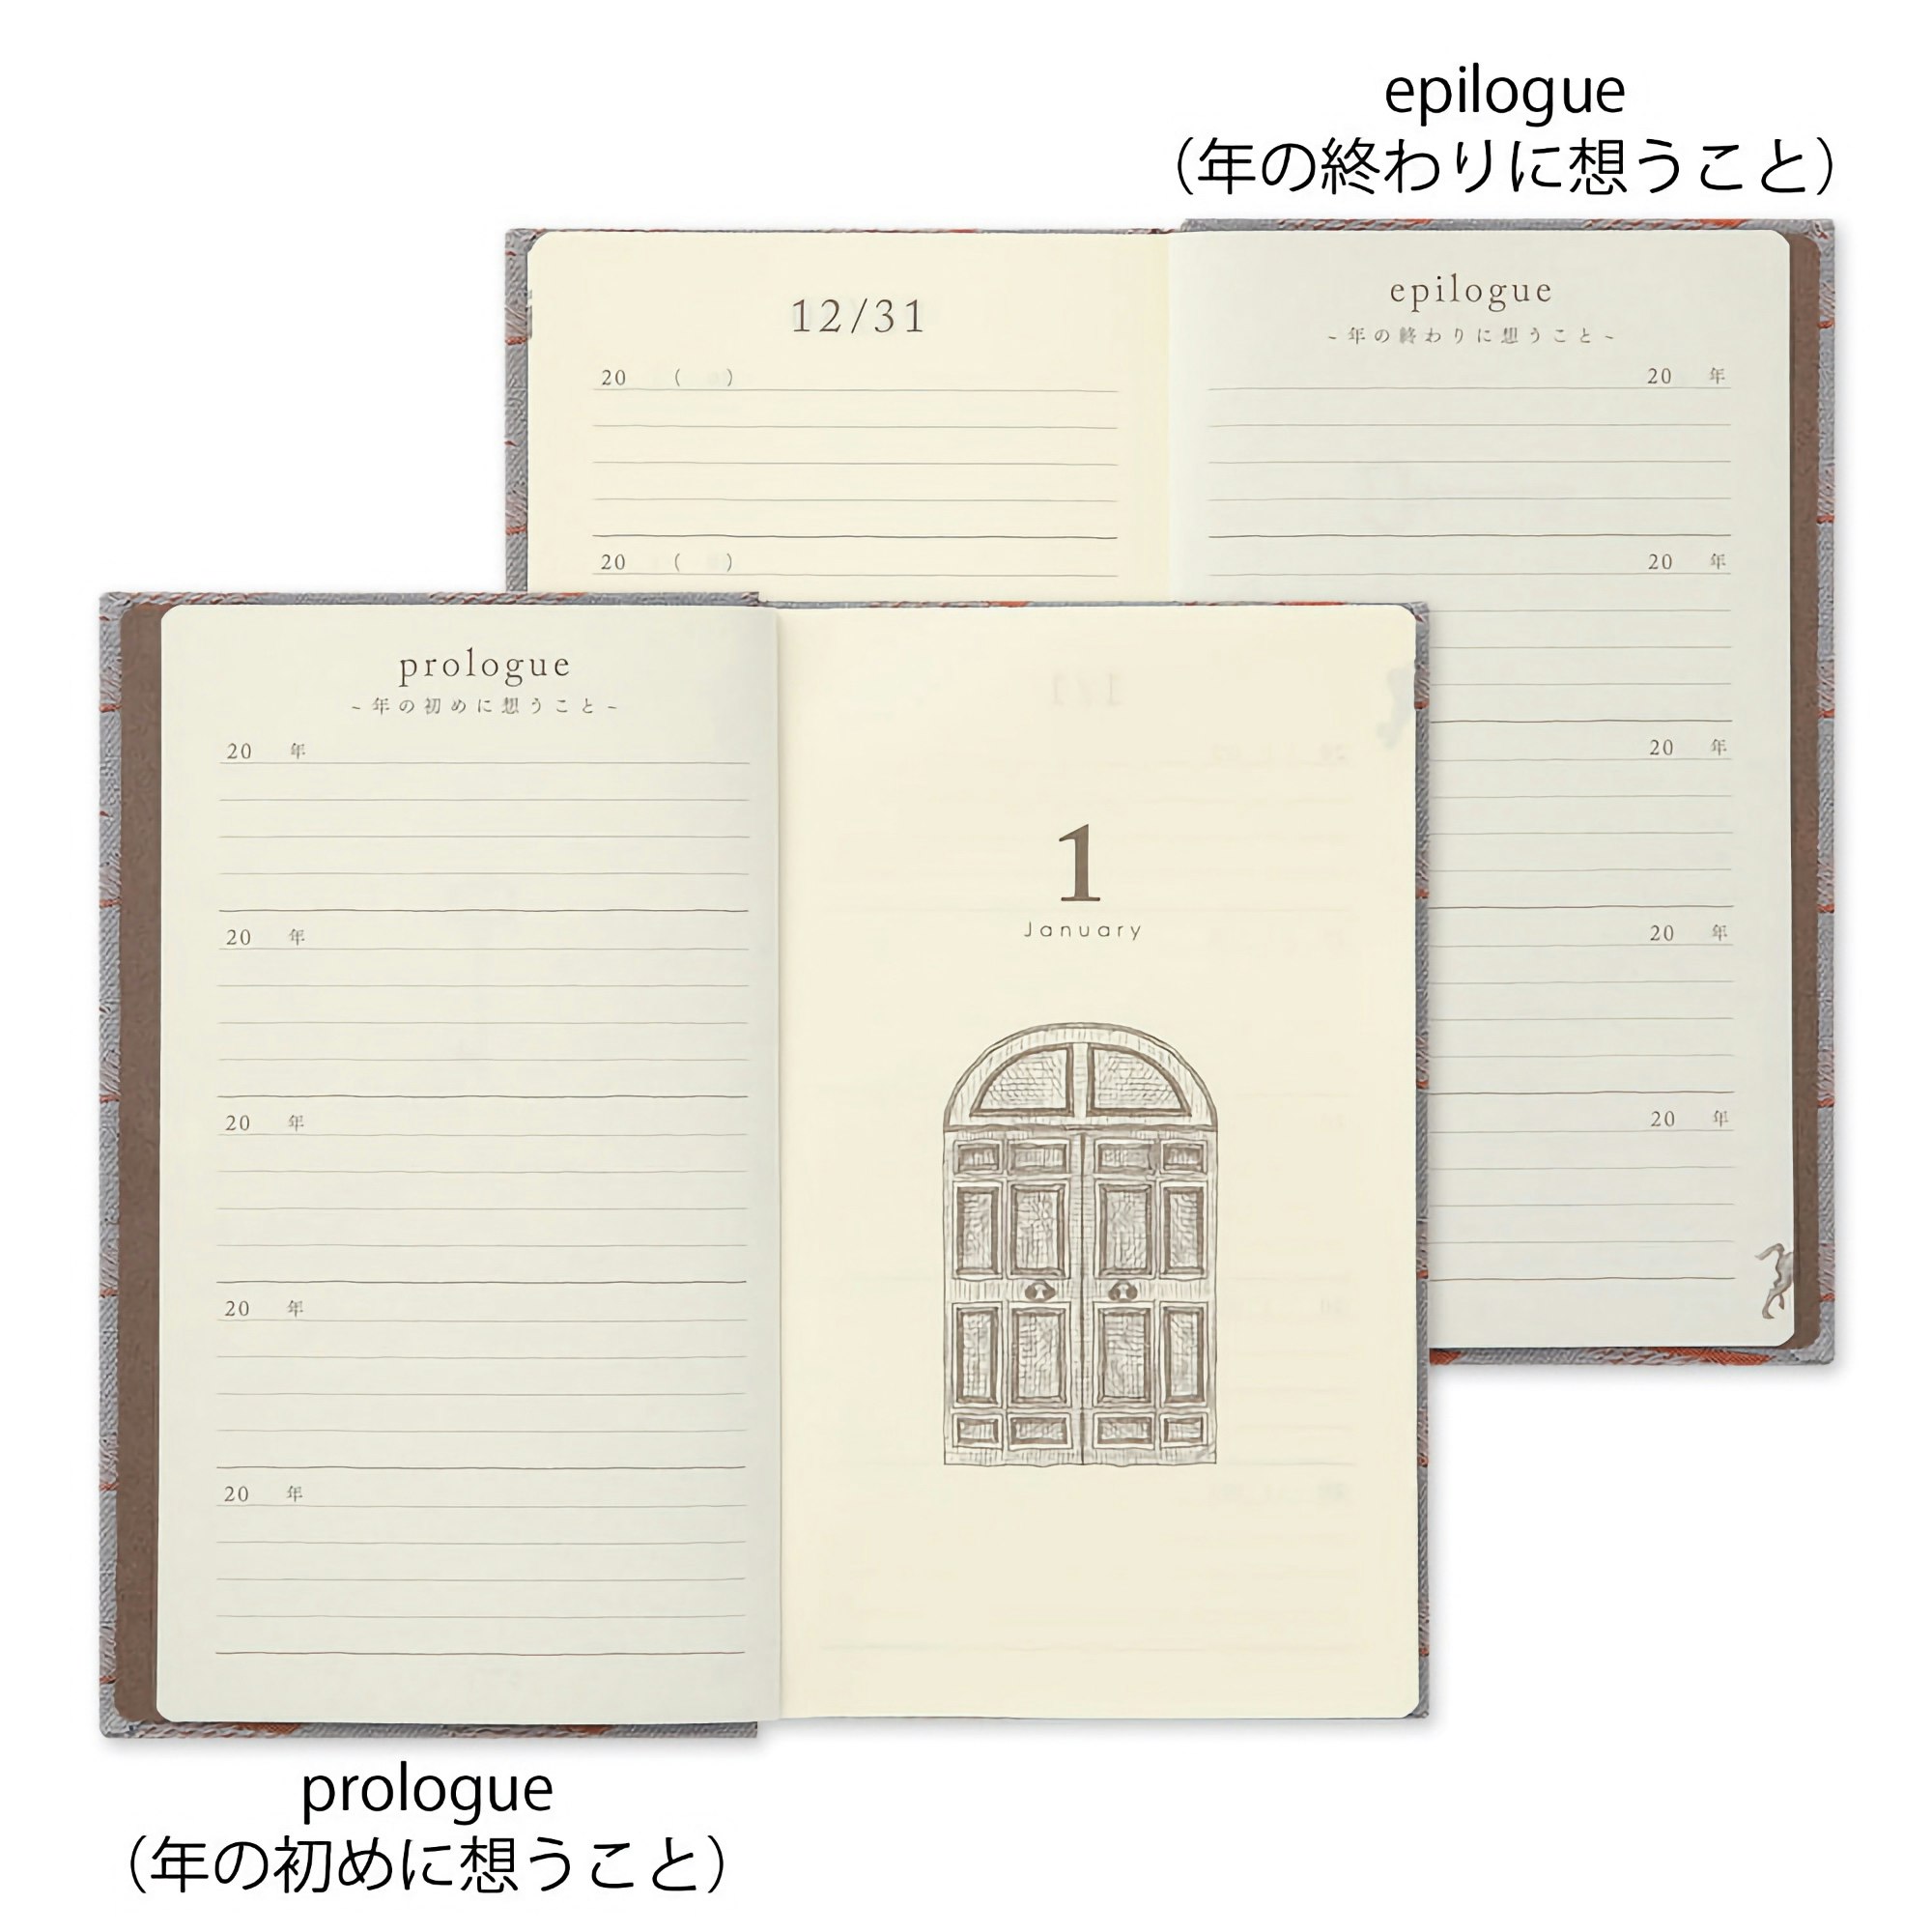 Midori 5 Years Diary Gate Kyo-ori Grey & Brown Limited Edition